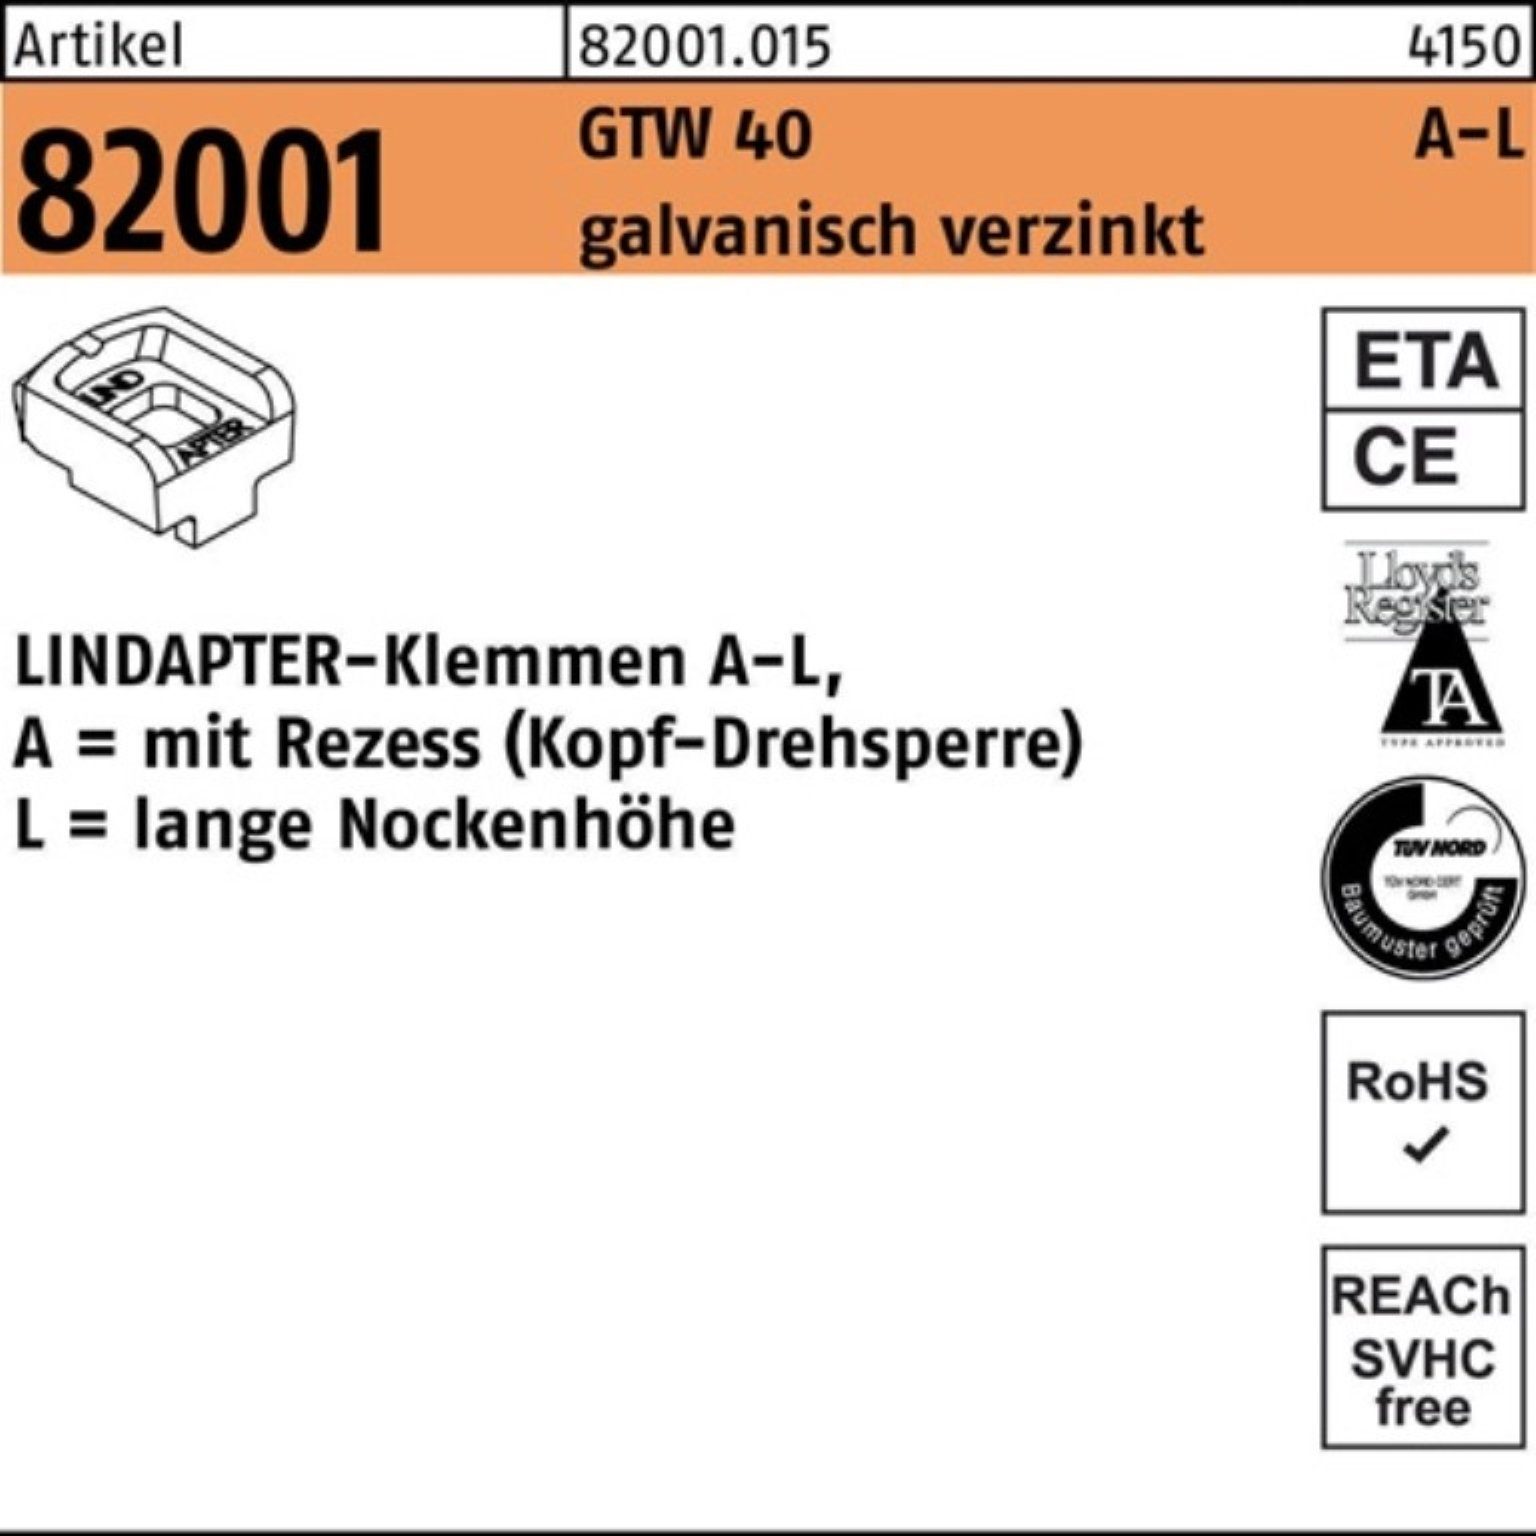 LINDA Stück 1 Pack Lindapter 40 100er GTW Klemmen LM Klemmen 16/11,0 galv.verz. R 82001